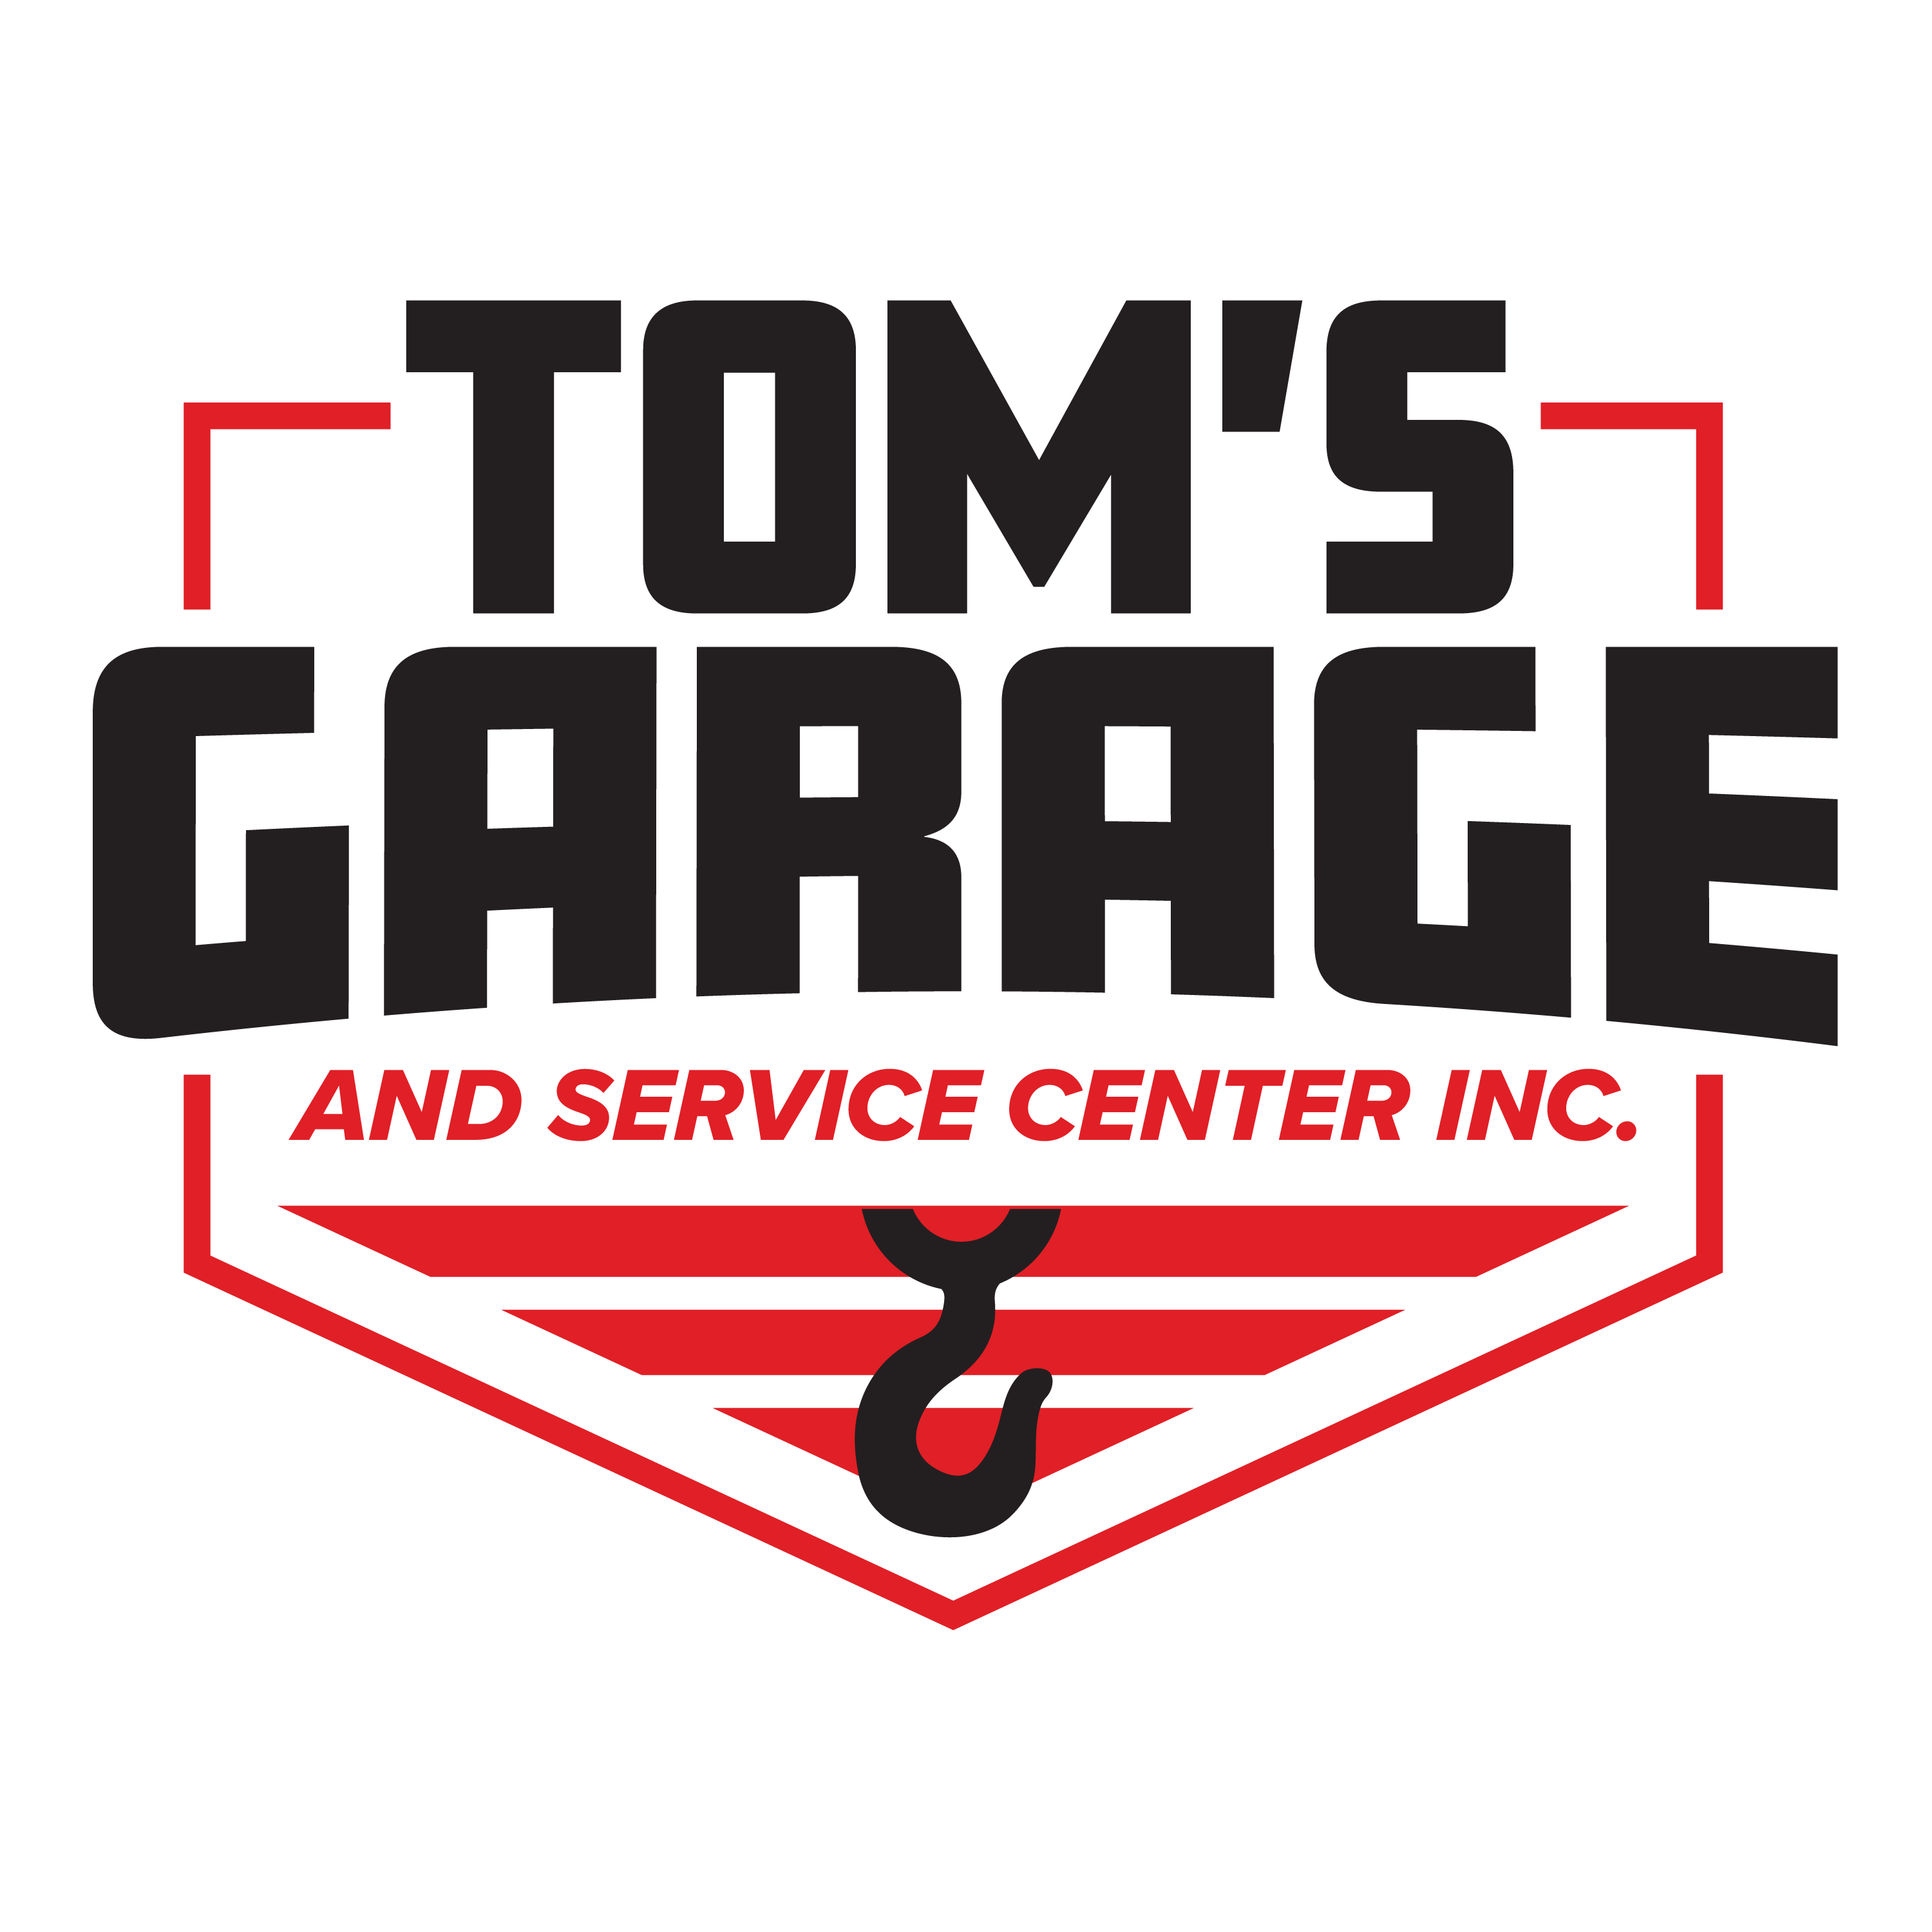 Toms Garage & Service Center